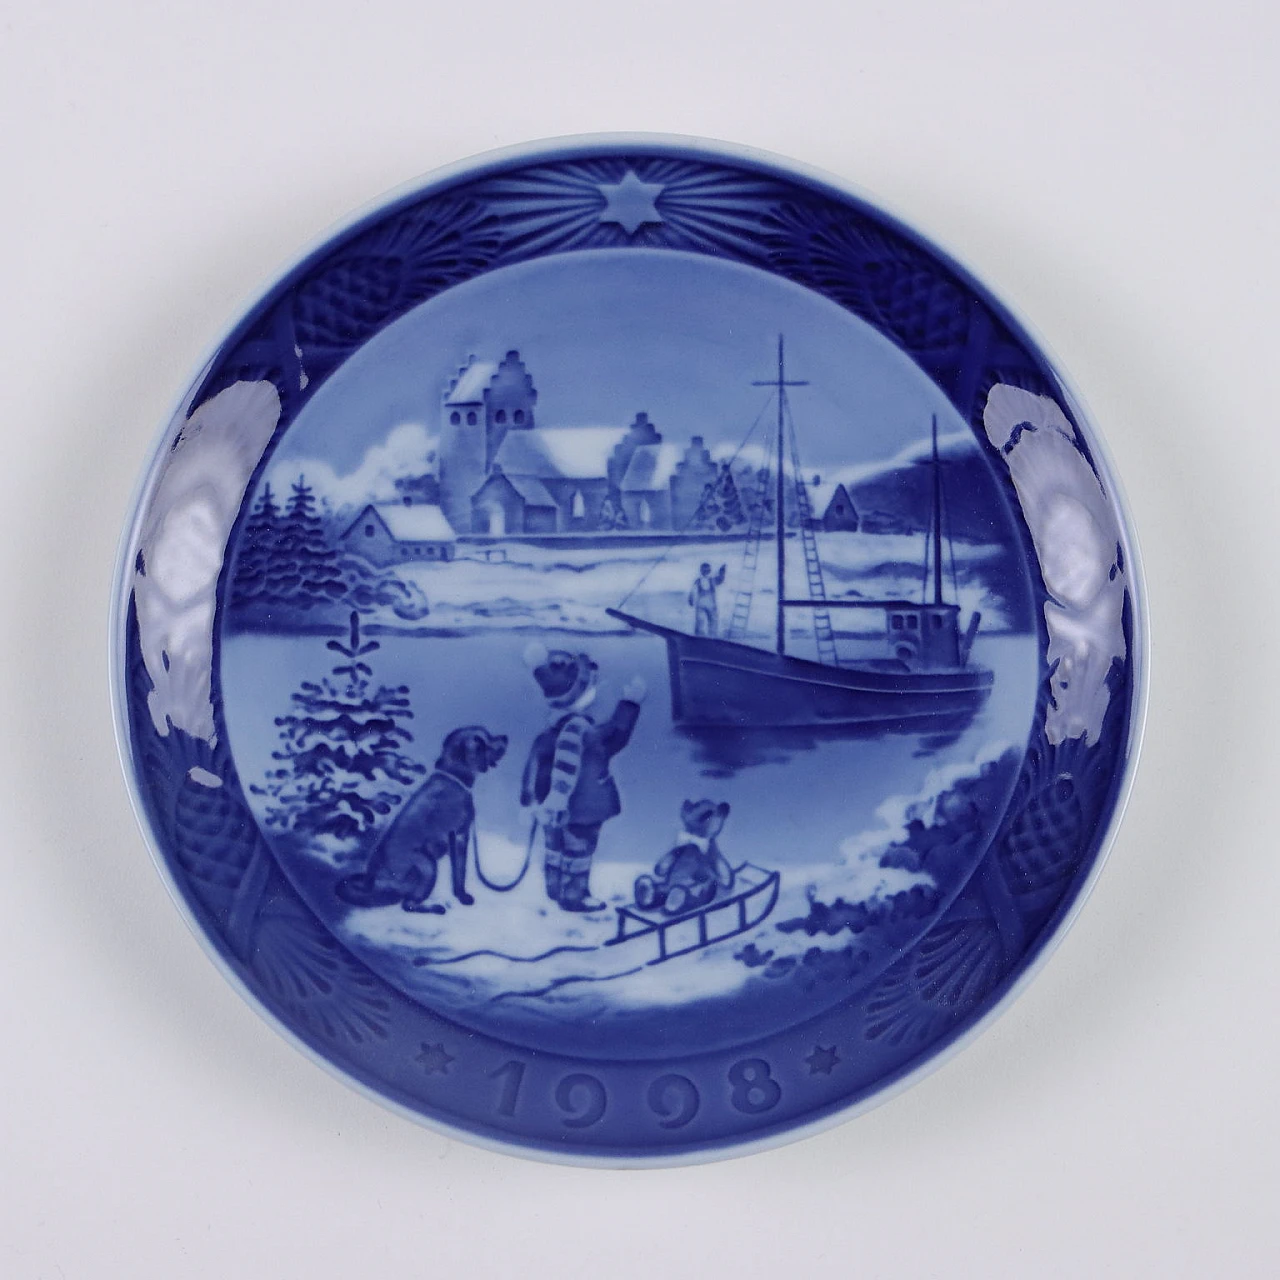 20 Blue porcelain plates by Royal Copenhagen 2